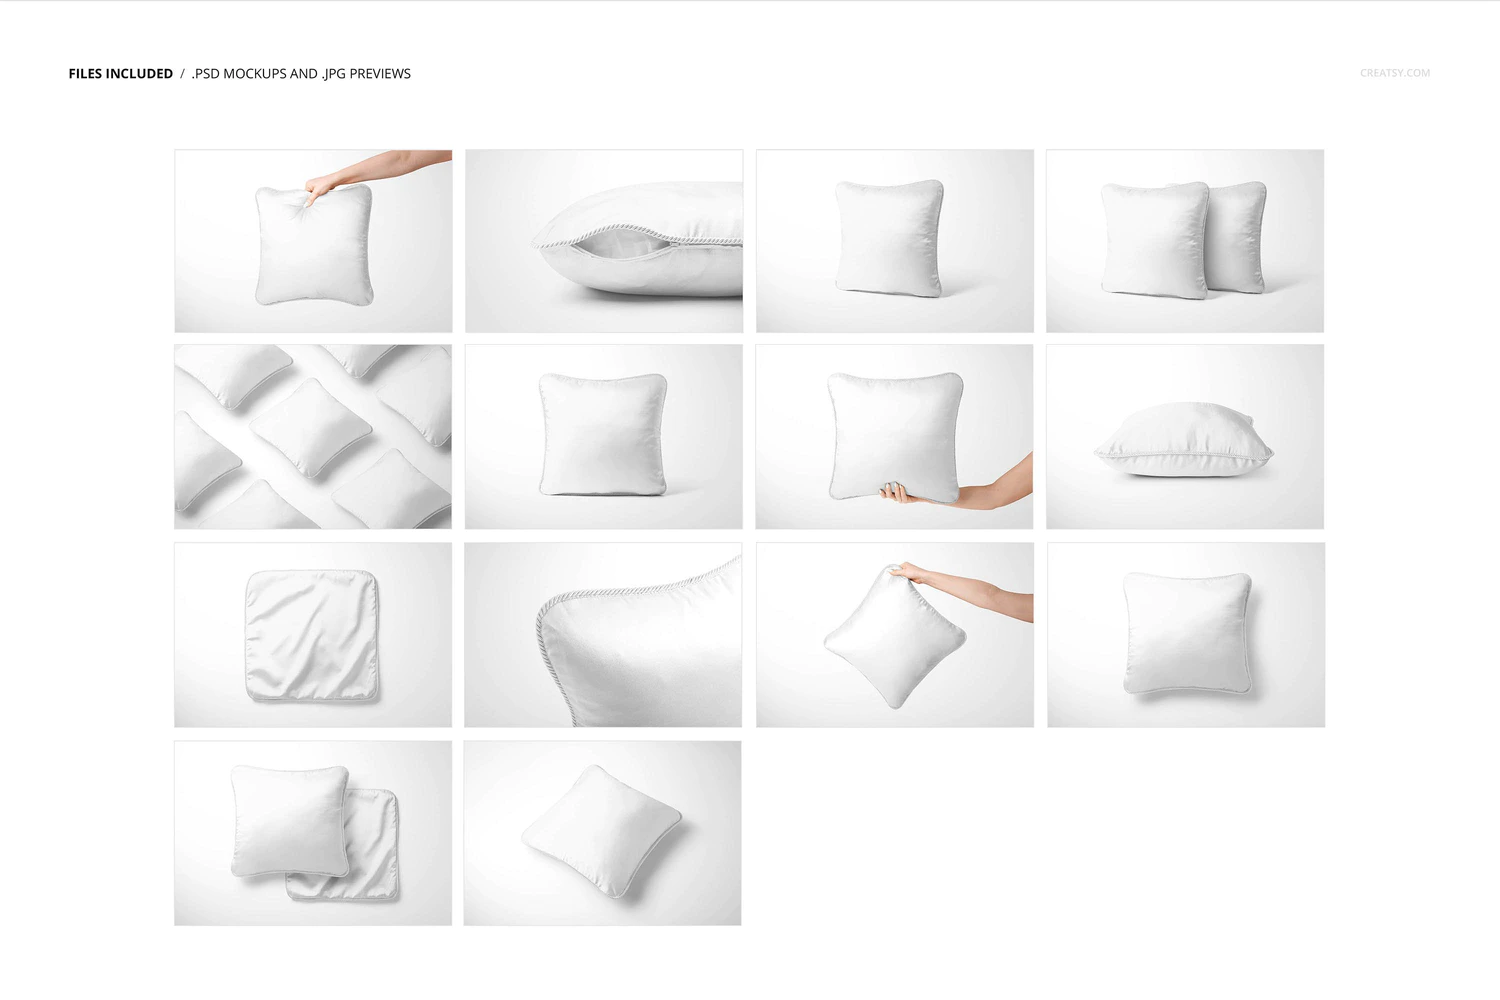 3374 14款质感居家抱枕靠垫腰靠图案印花设计贴图ps样机素材展示模板 Silk Cushion with Braid Mockup Set